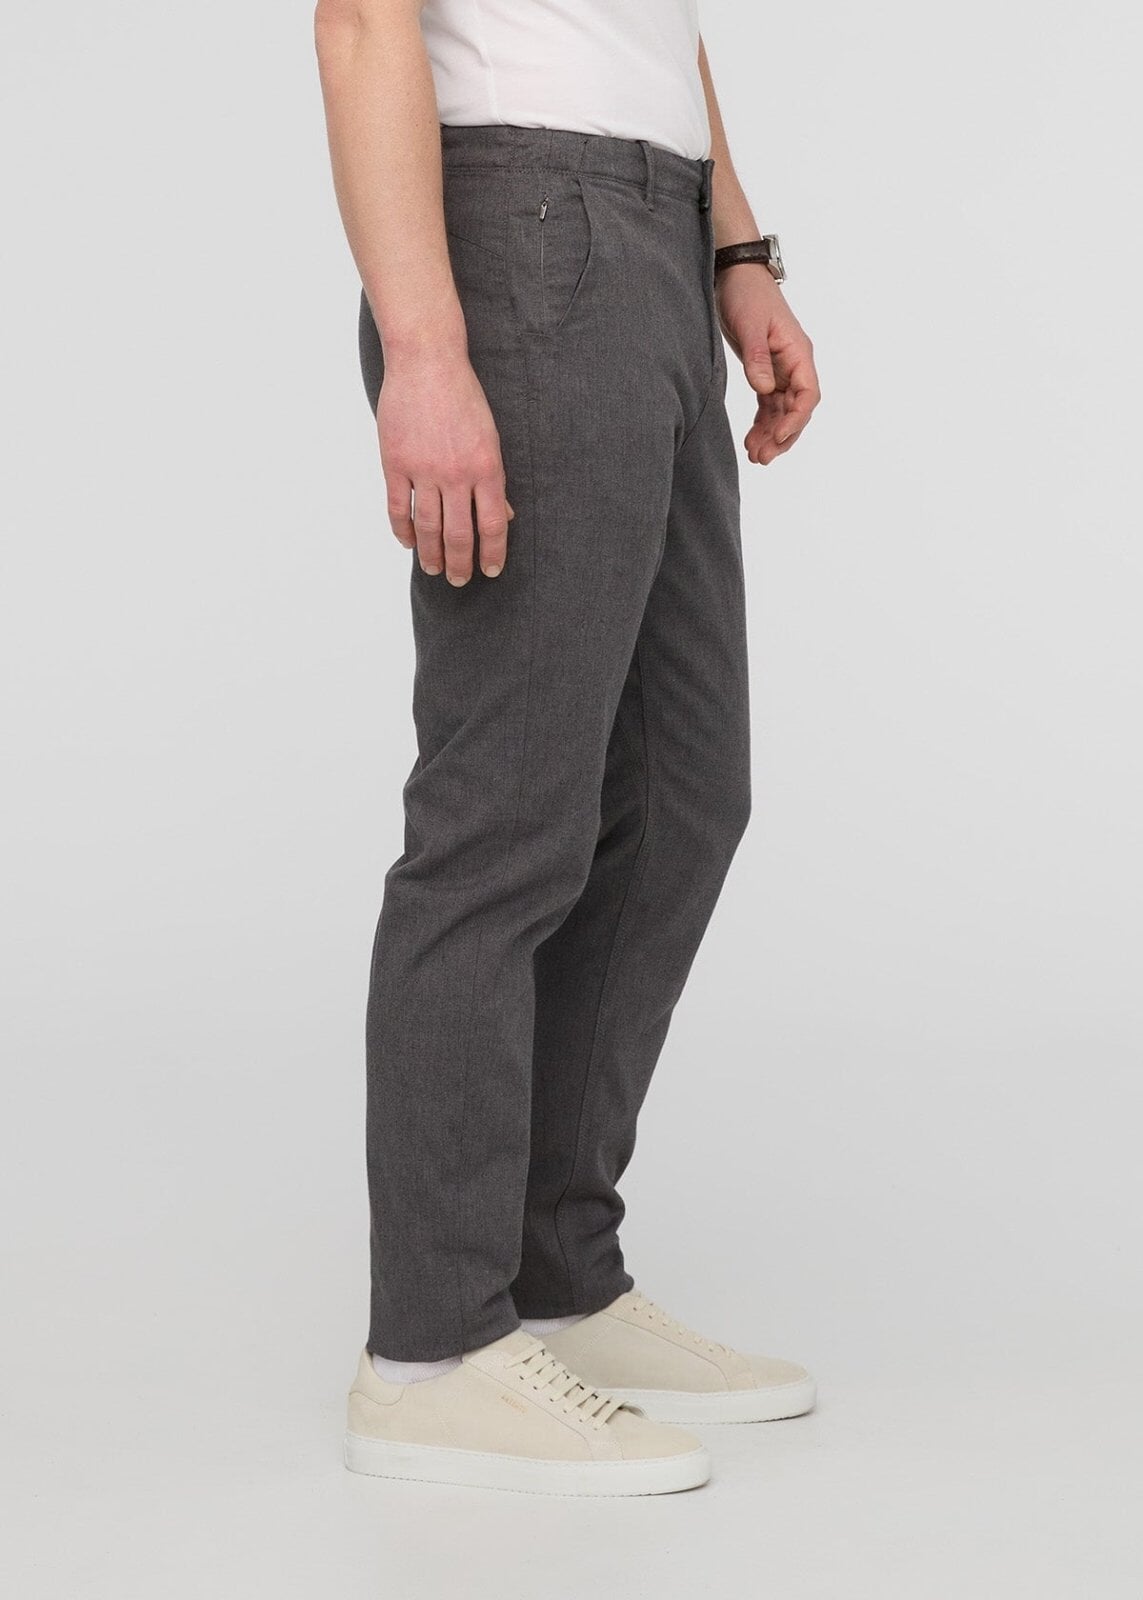 LADIESORA Regular Fit Men Grey Trousers - Buy LADIESORA Regular Fit Men  Grey Trousers Online at Best Prices in India | Flipkart.com